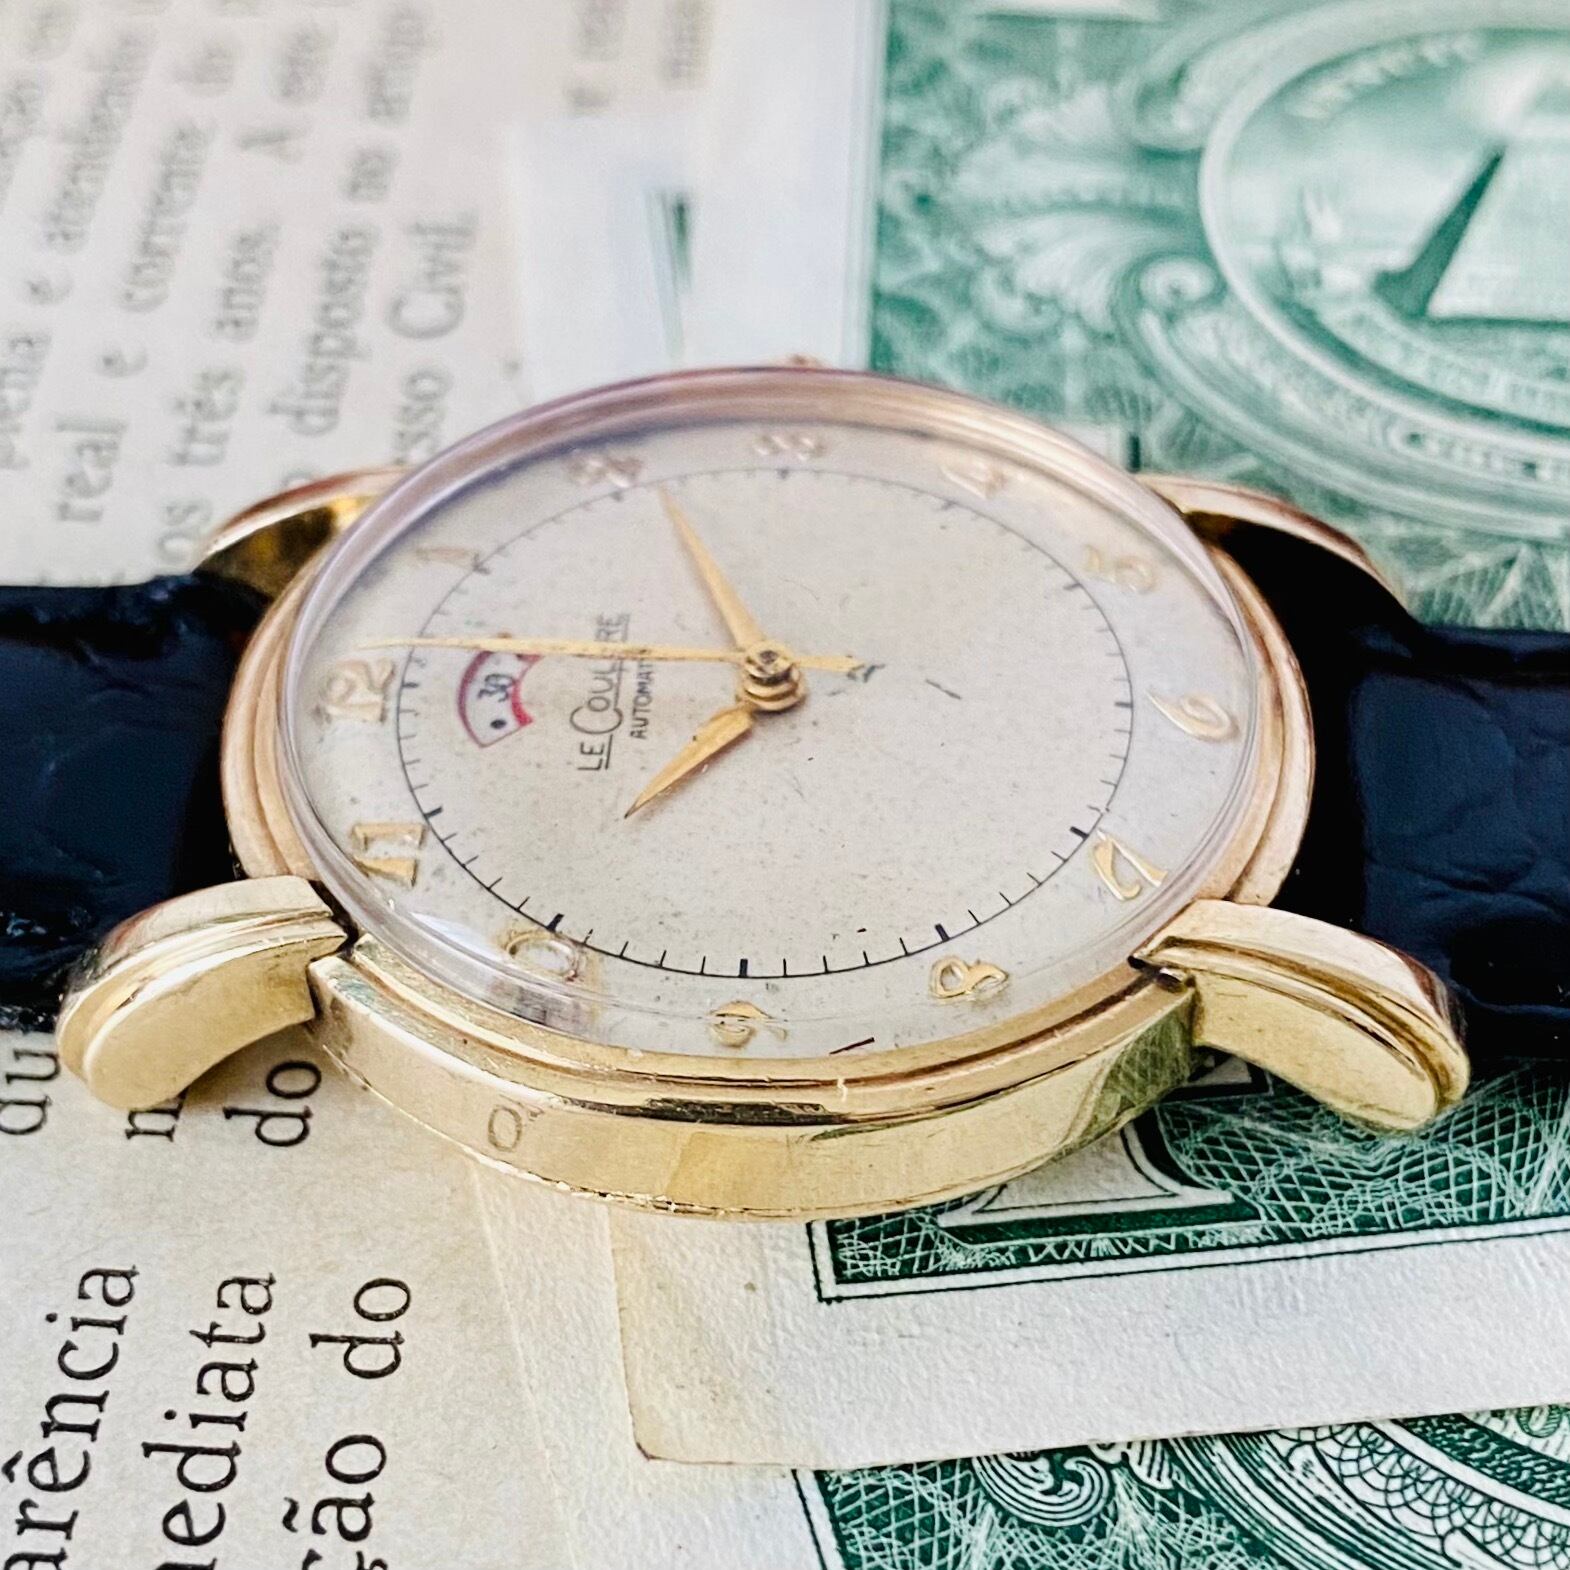 【高級時計 ジャガールクルト】LeCoultre 481 パワーリザーブ インジケーター 10kgf 自動巻 メンズ レディース アナログ 腕時計